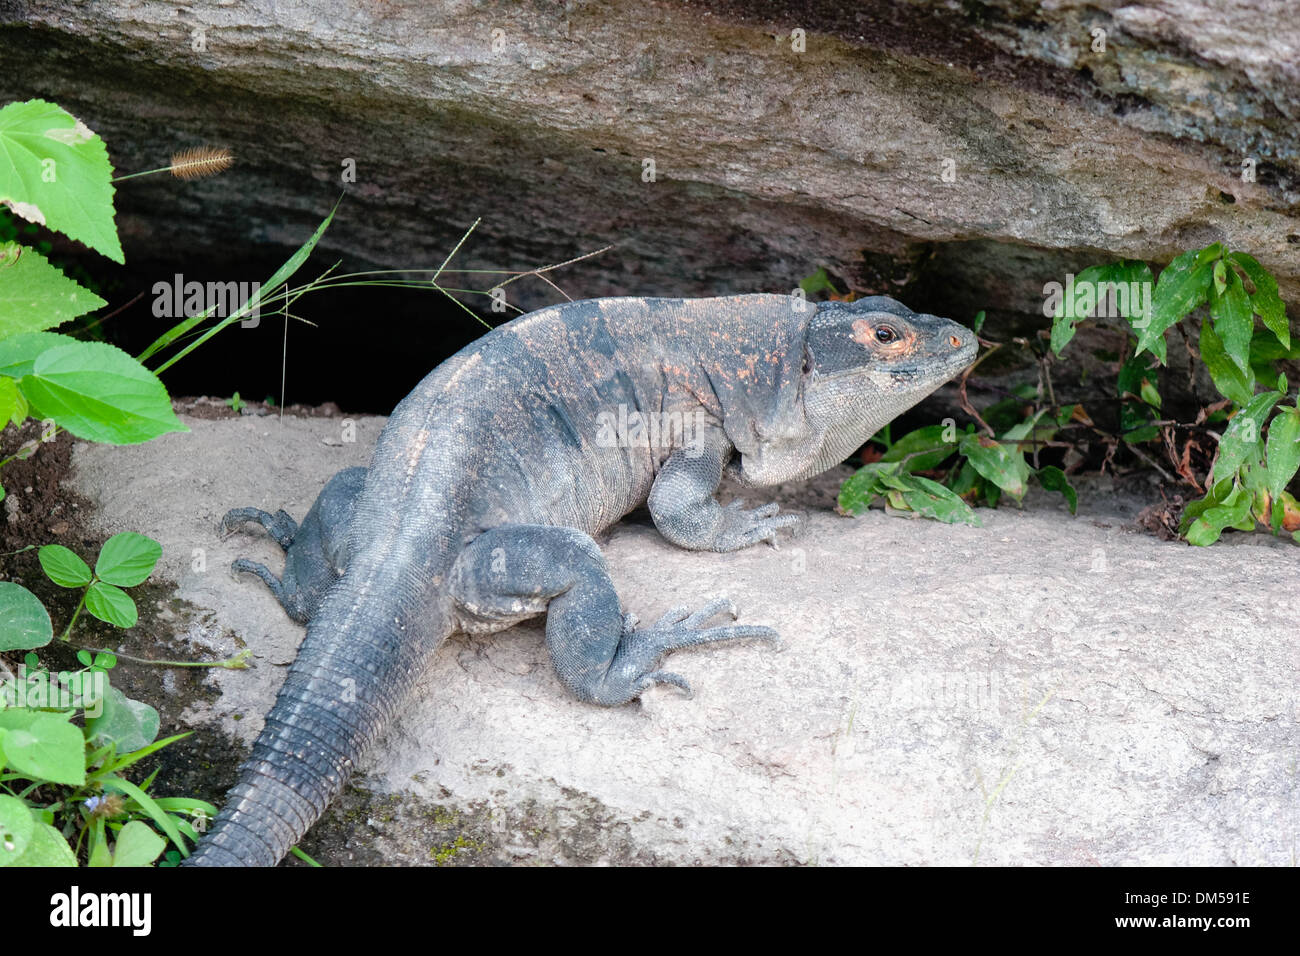 fat lizard that is not an iguana. Stock Photo